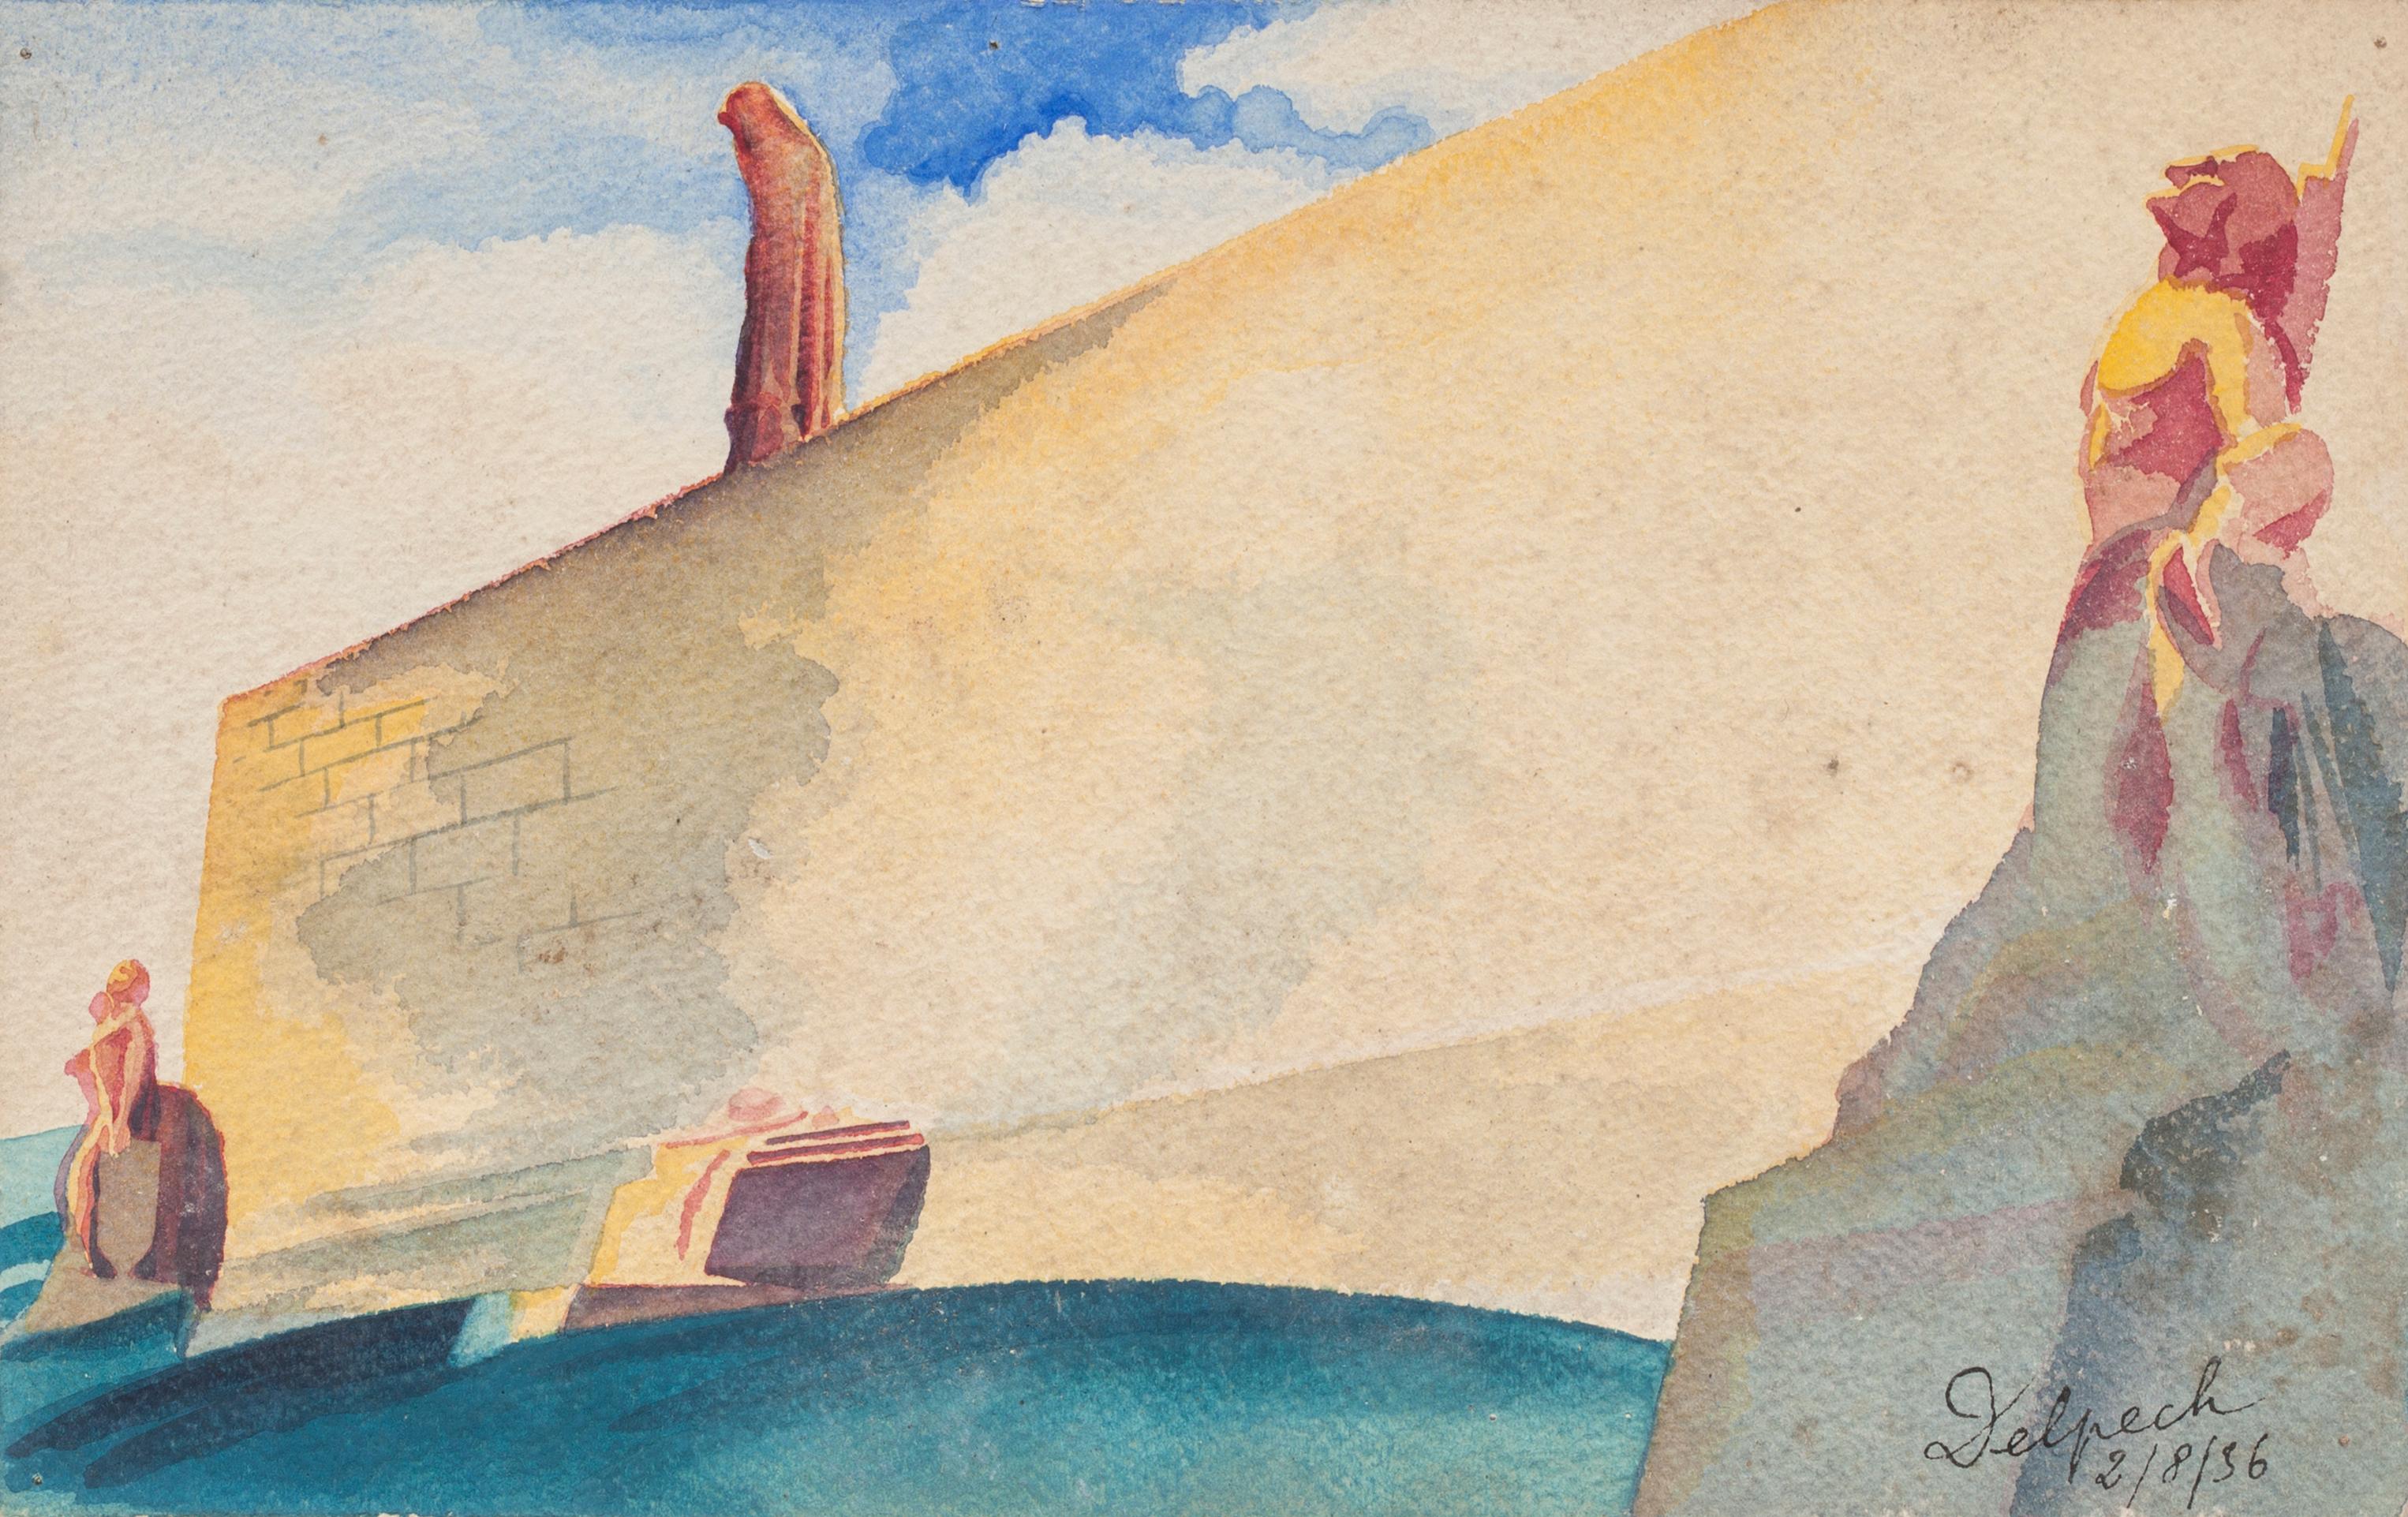 Landscape - Watercolor on Paper by Jean Delpech - 1950s